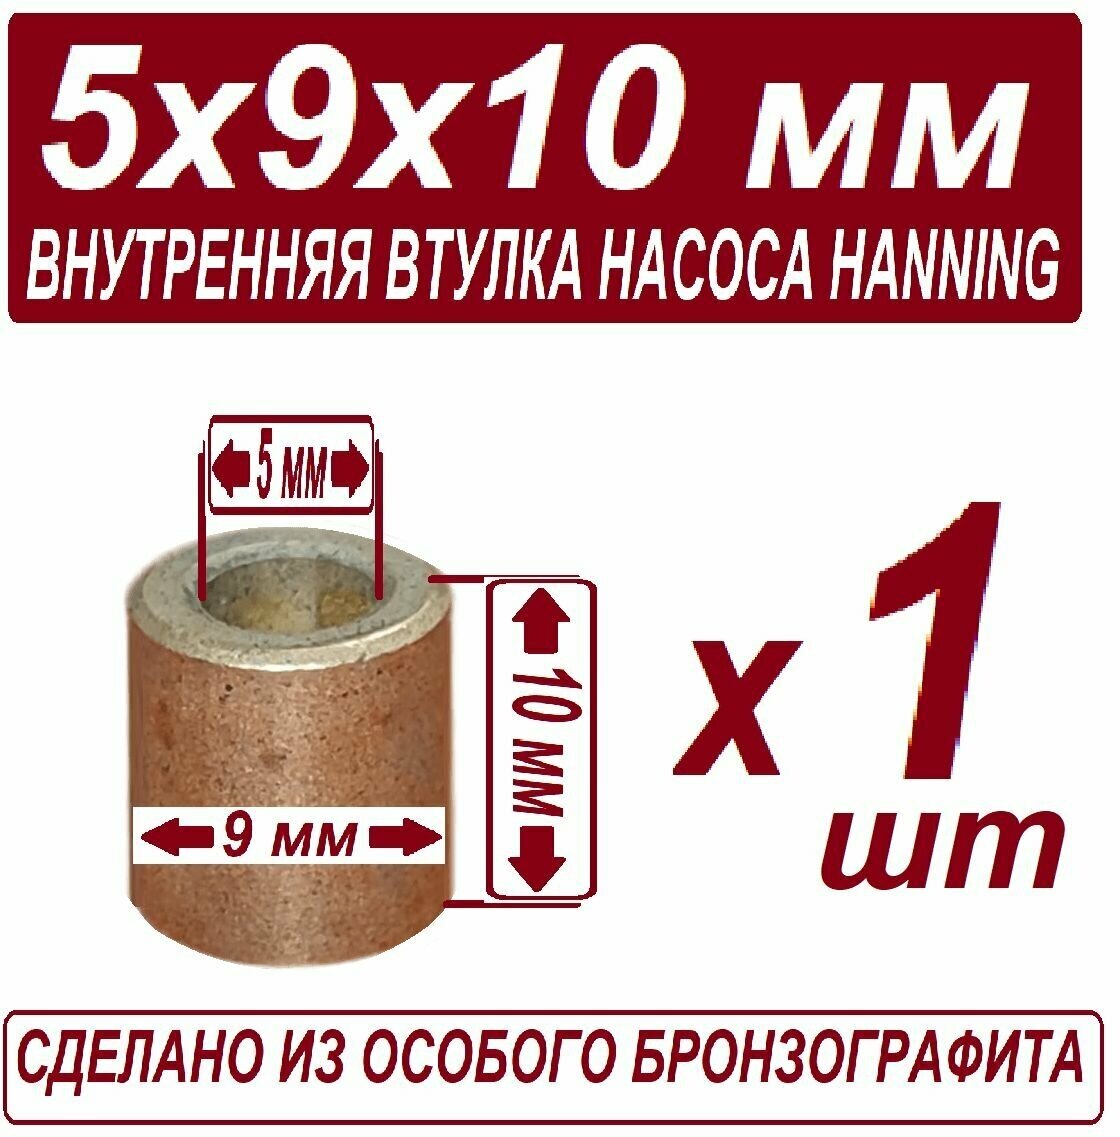 Втулка 5x9x10 для рециркуляционного насоса Hanning (Whirlpool Indesit Ariston) внутренняя бронзо графитовая в наборе из 2 штук